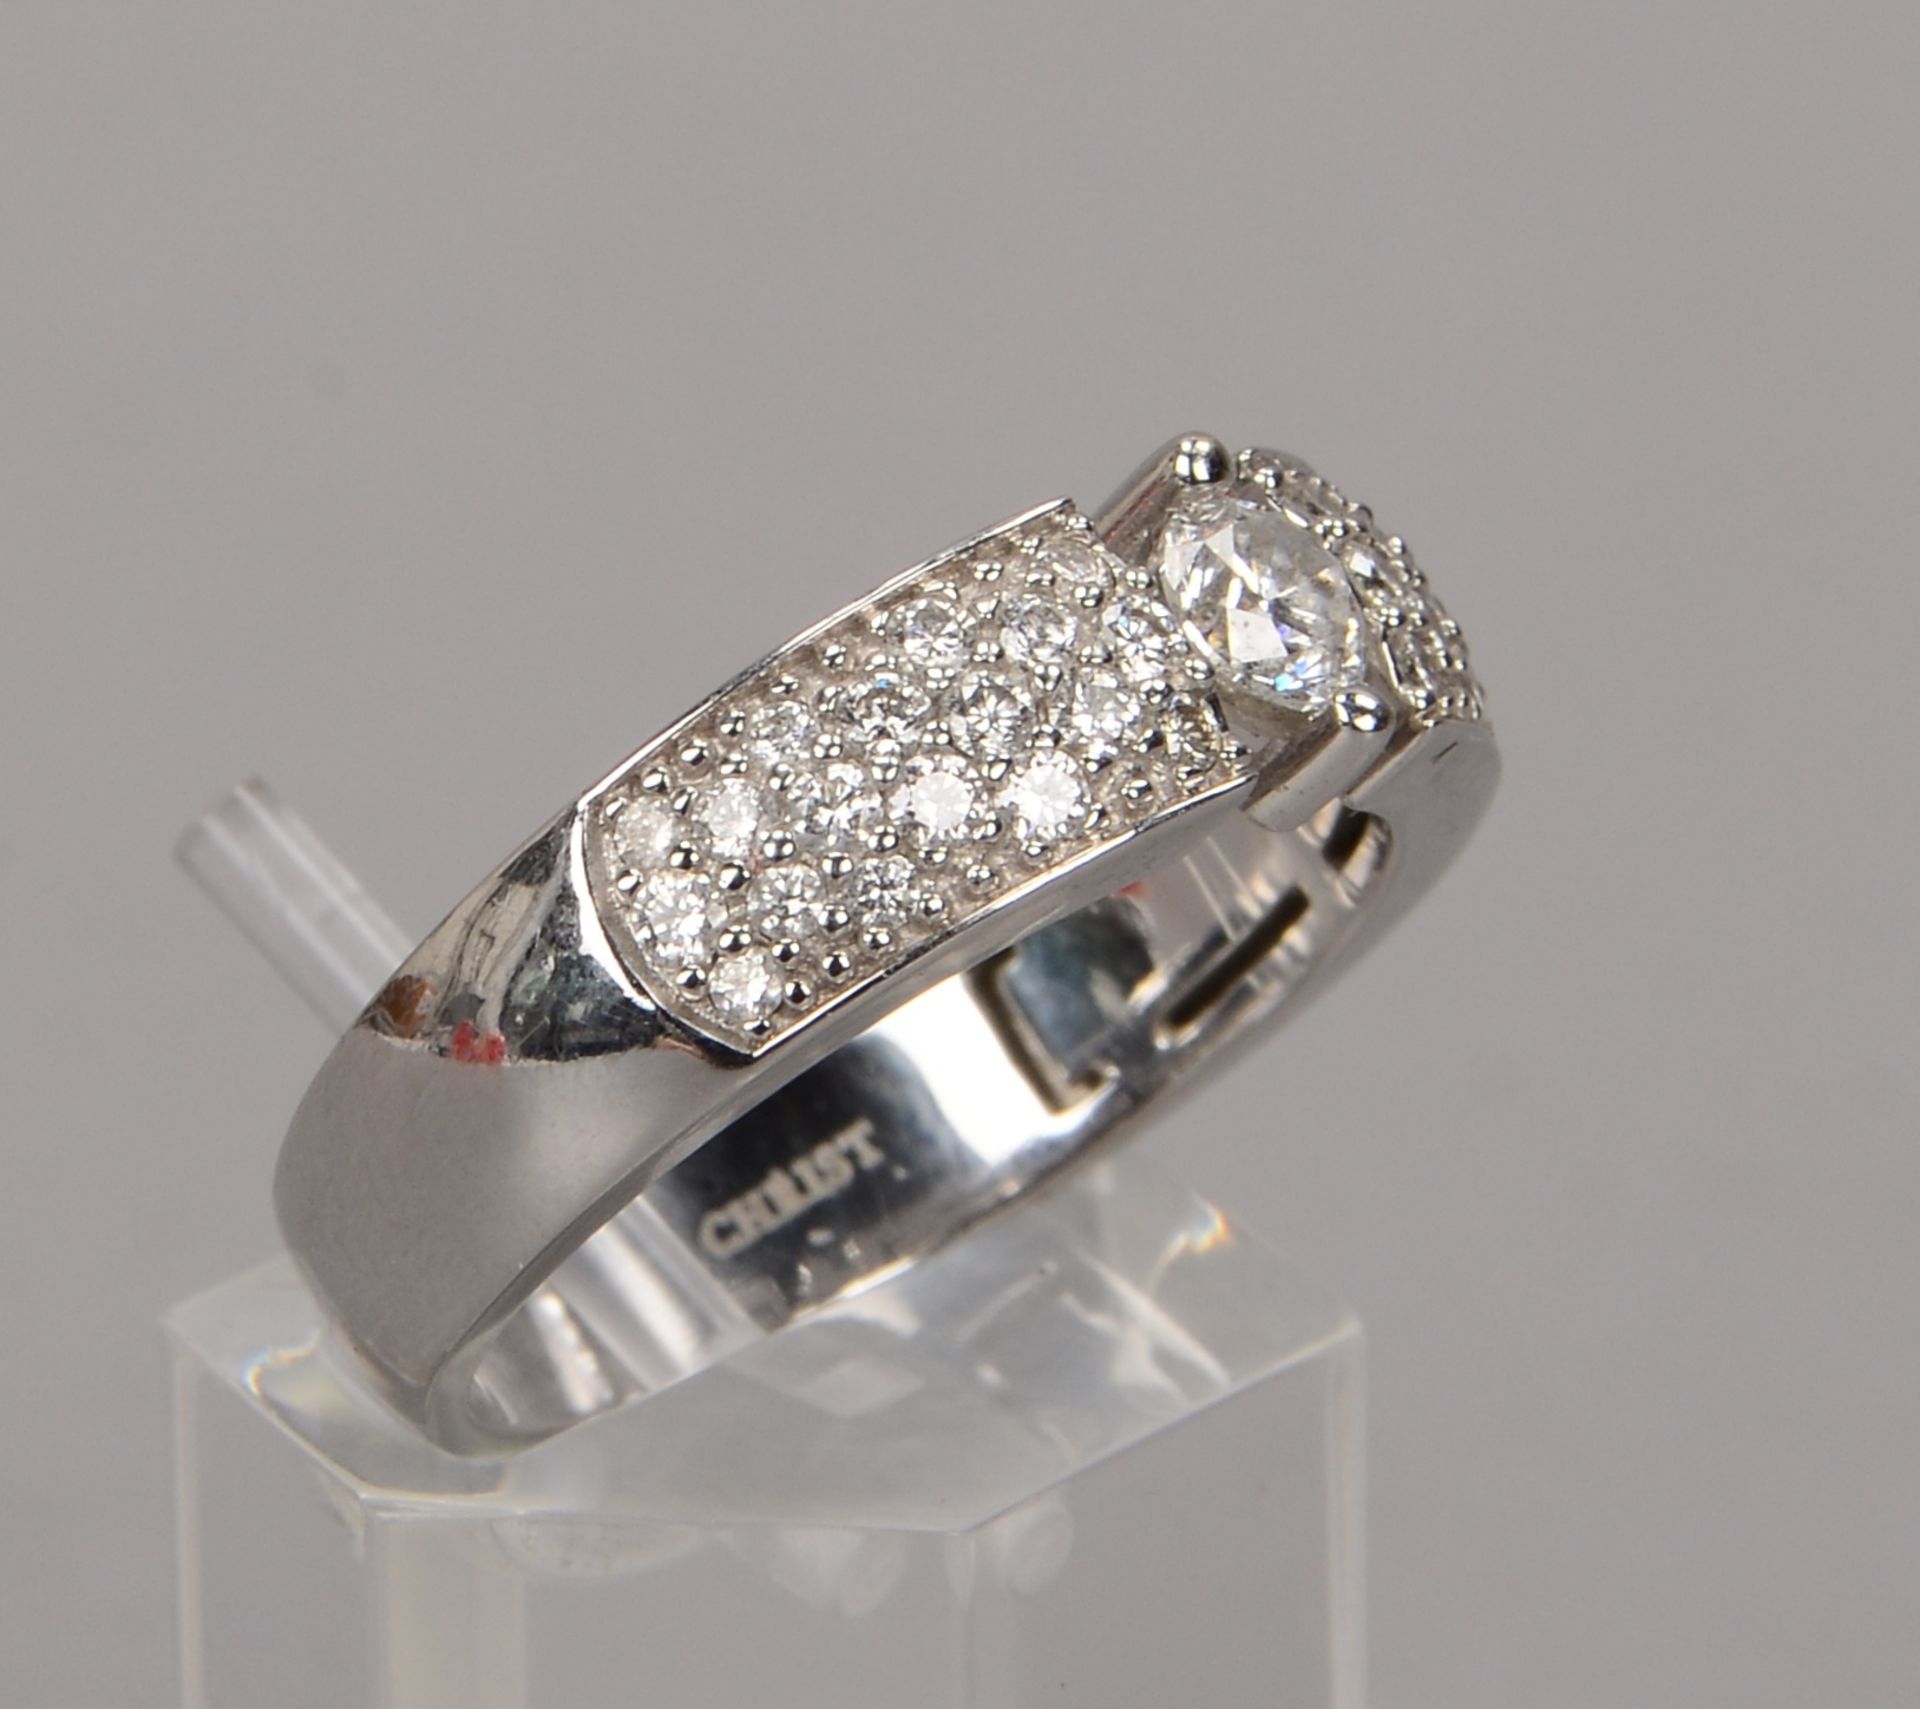 Juwelier Christ, Ring, 585 WG, besetzt mit zentralem Brillant von ca. 0,25 ct, Ringschulter mit viel